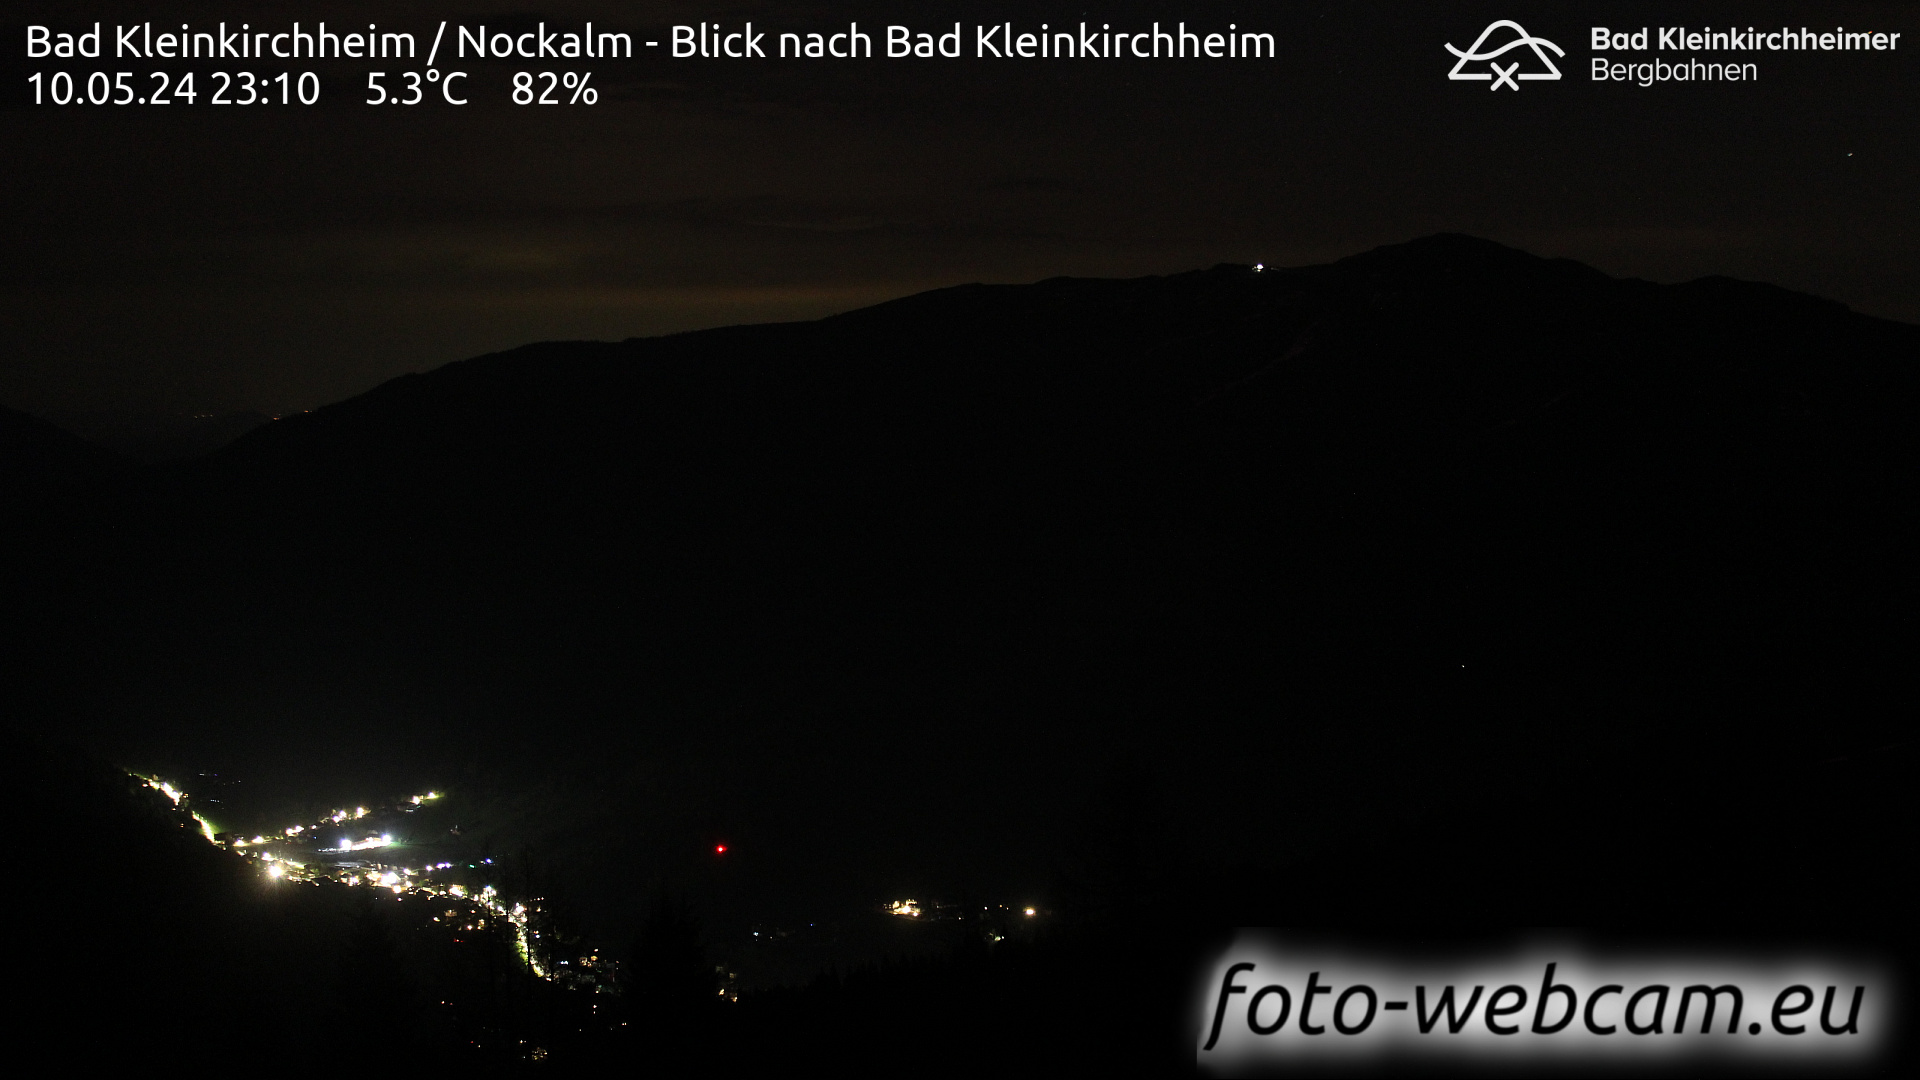 Bad Kleinkirchheim Do. 23:17